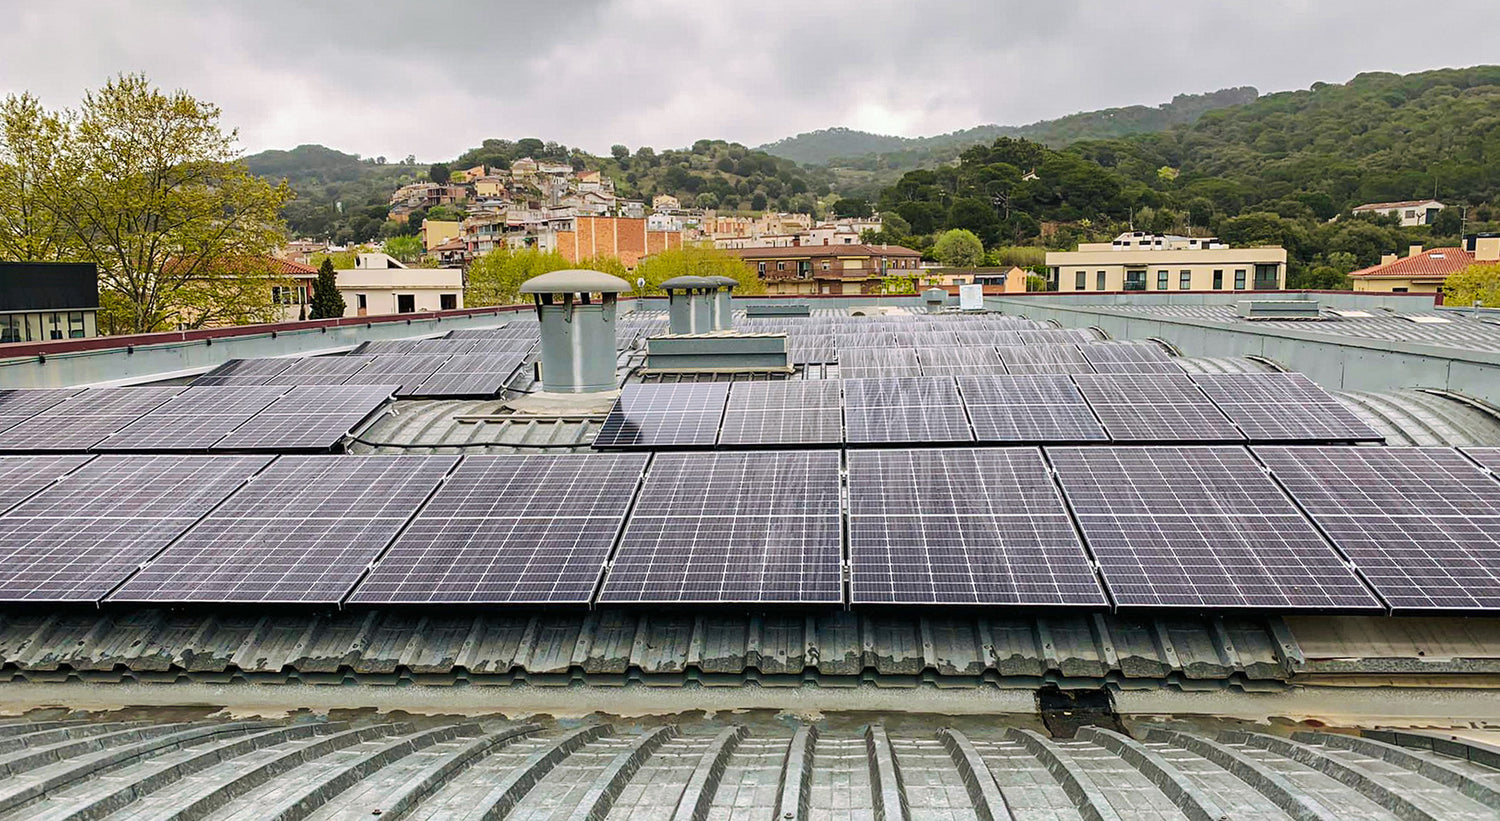 Placas solares en la fábrica de Arpe, energía autoproducida 100% renovable